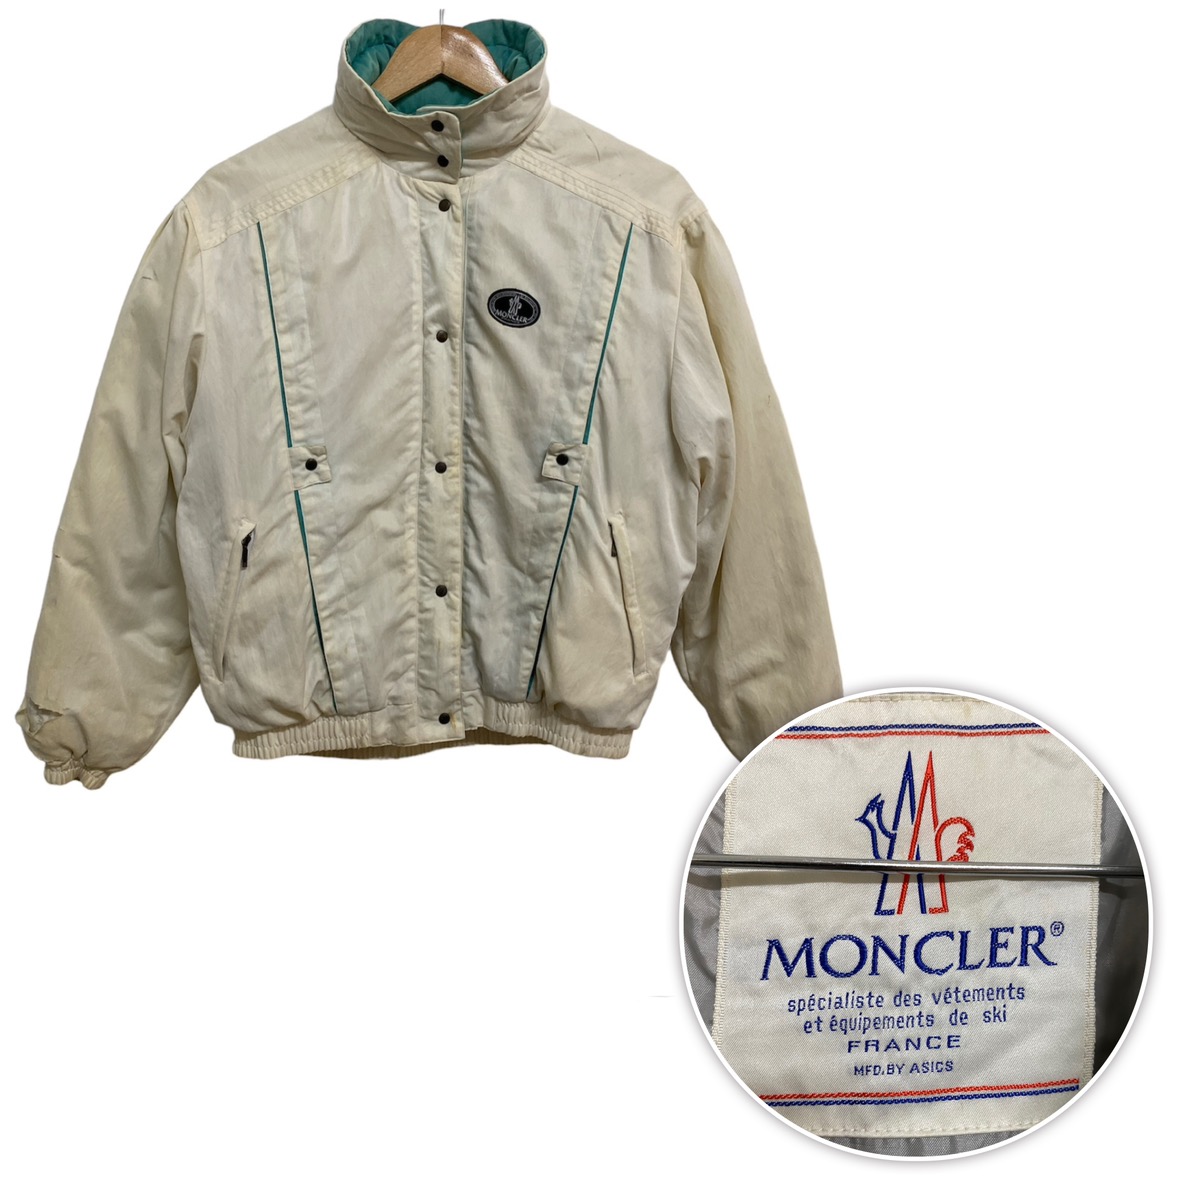 Vintage Moncler Ski Wear Jacket - 1